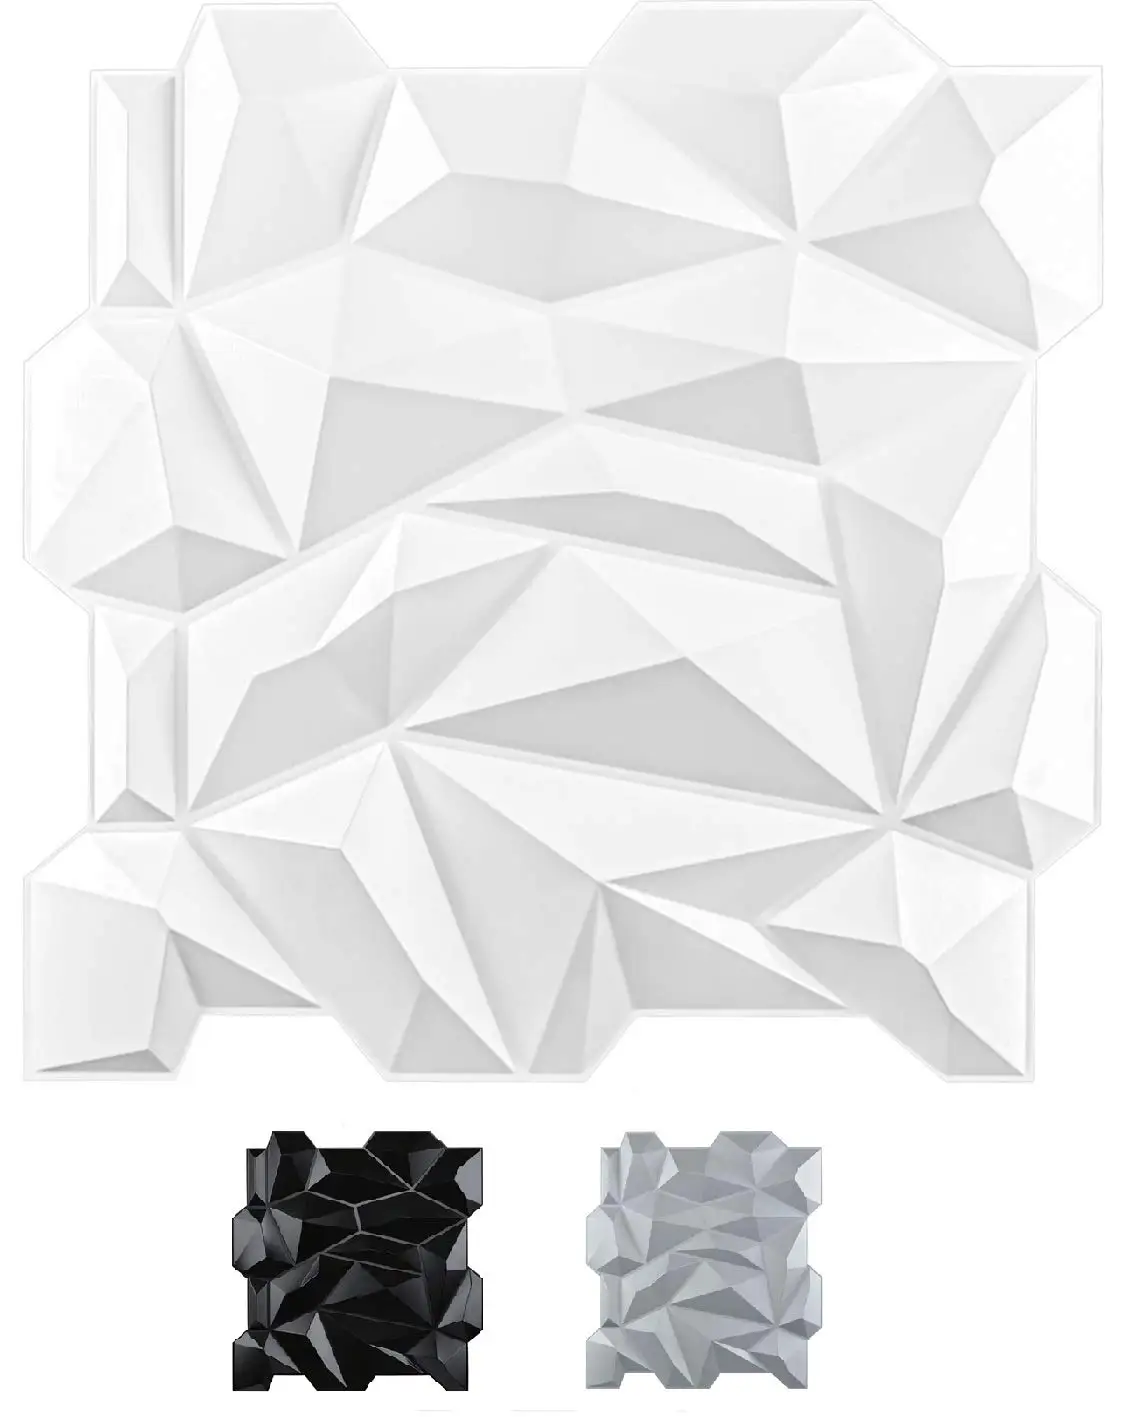 50x50cm Plastic 3D Diamond Wall Panels Jagged Matching-Matt White for Living Room Bedroom TV Background Ceiling Pack of 12 Tiles rectangular laundry basket hamper plastic for closet dorm laundry room bedroom nestable white 1 2 3 4 6 8 12 16 pack